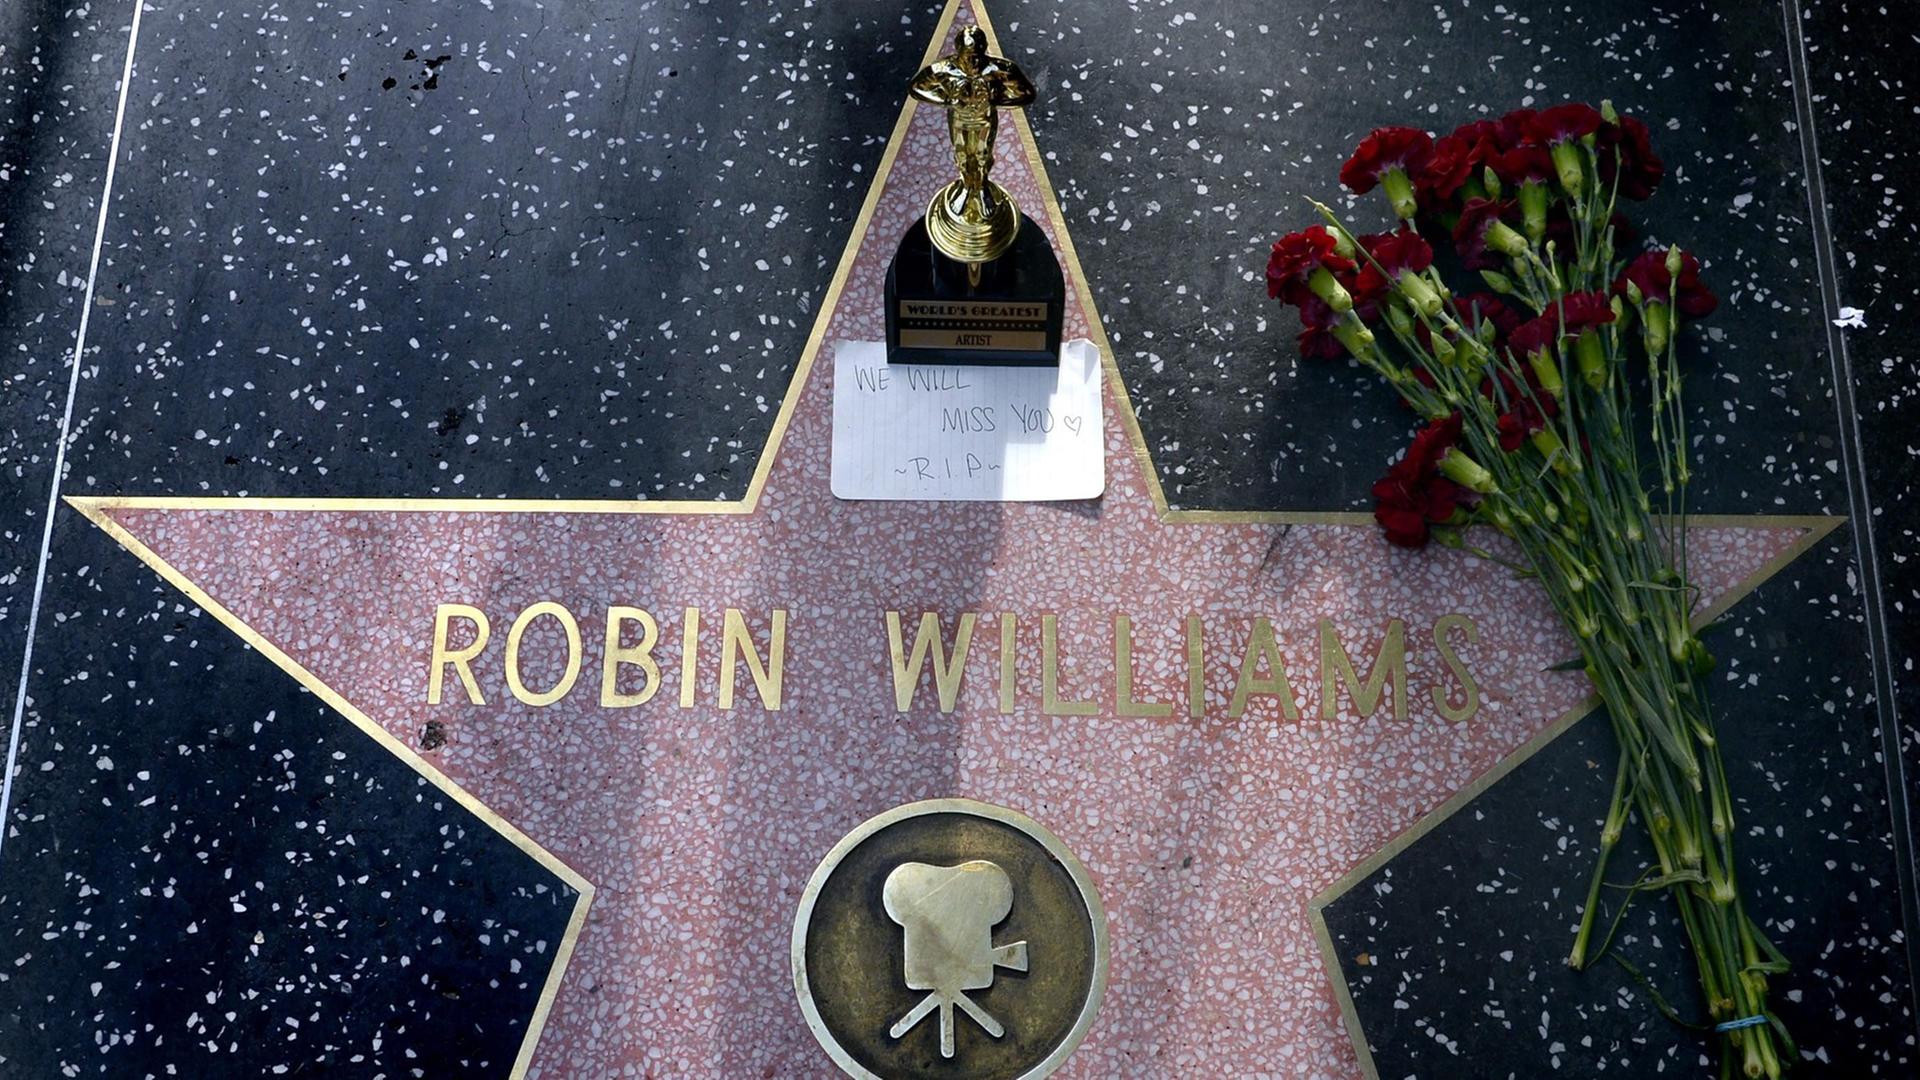 Blumen und ein Oscar-Souvenir am Hollywood Walk of Fame am Stern von US-Schauspieler Robin Williams am 11. August 2014.